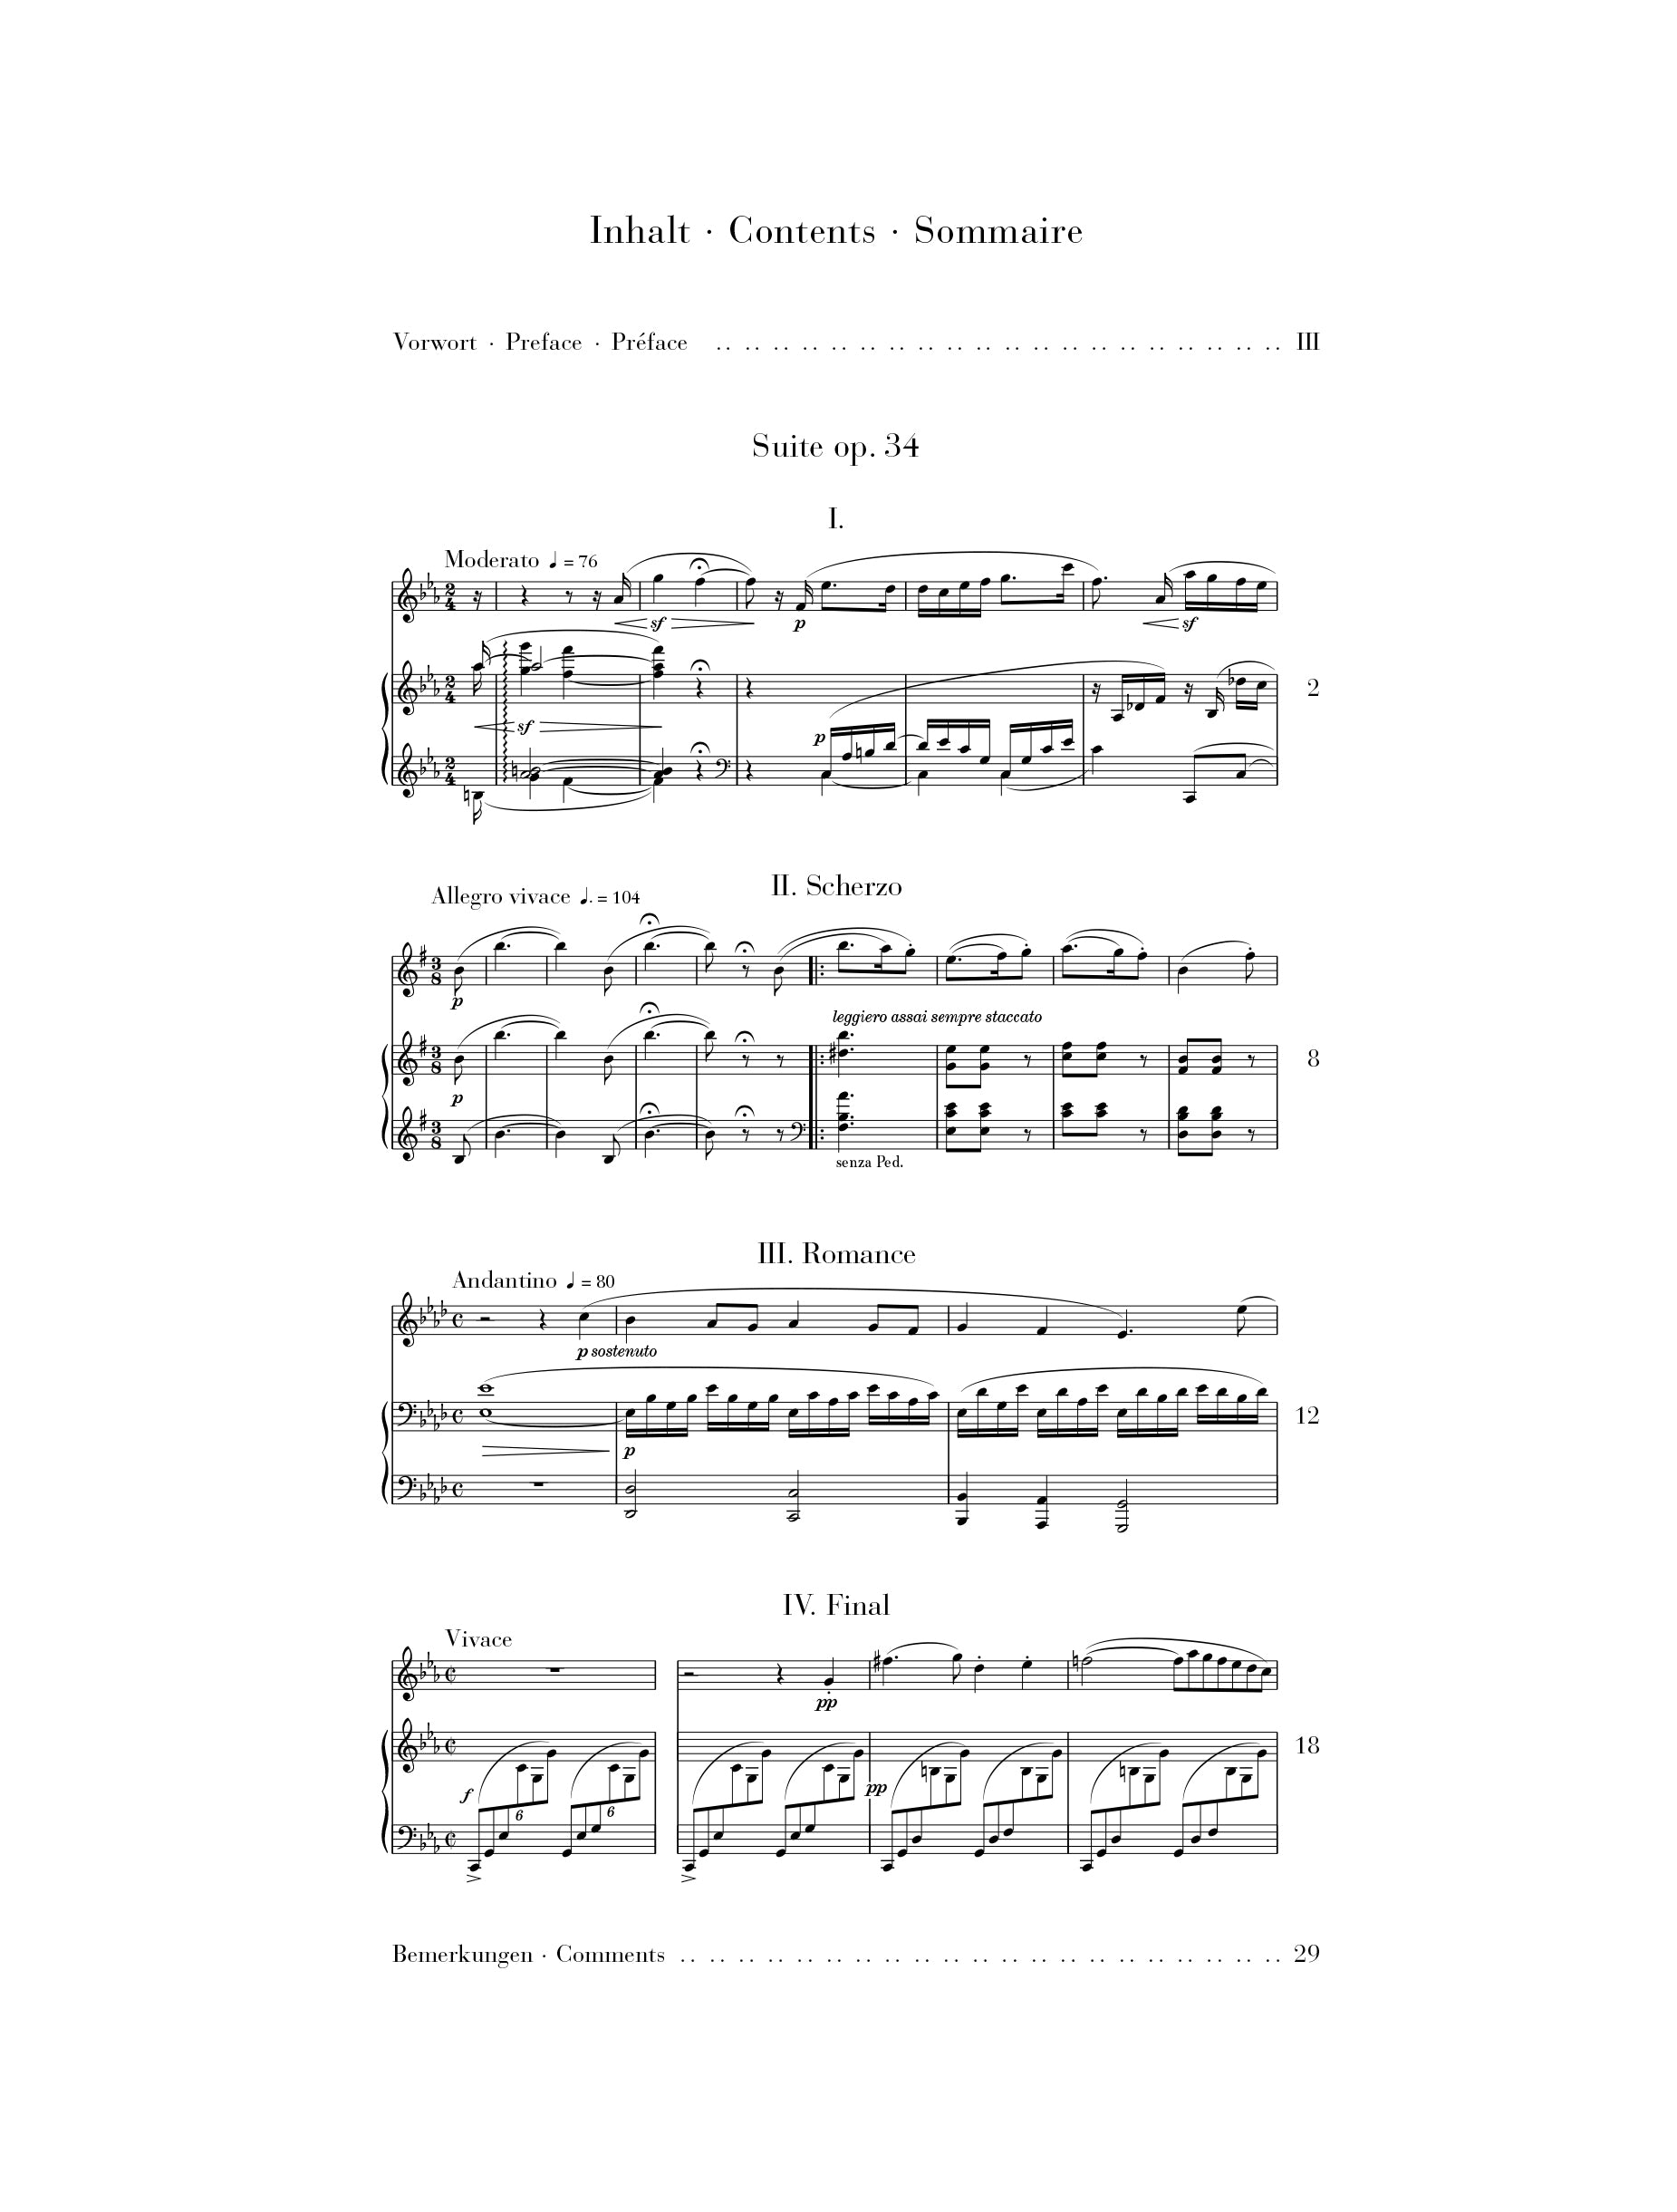 Widor: Suite Op 34 for Flute & Piano